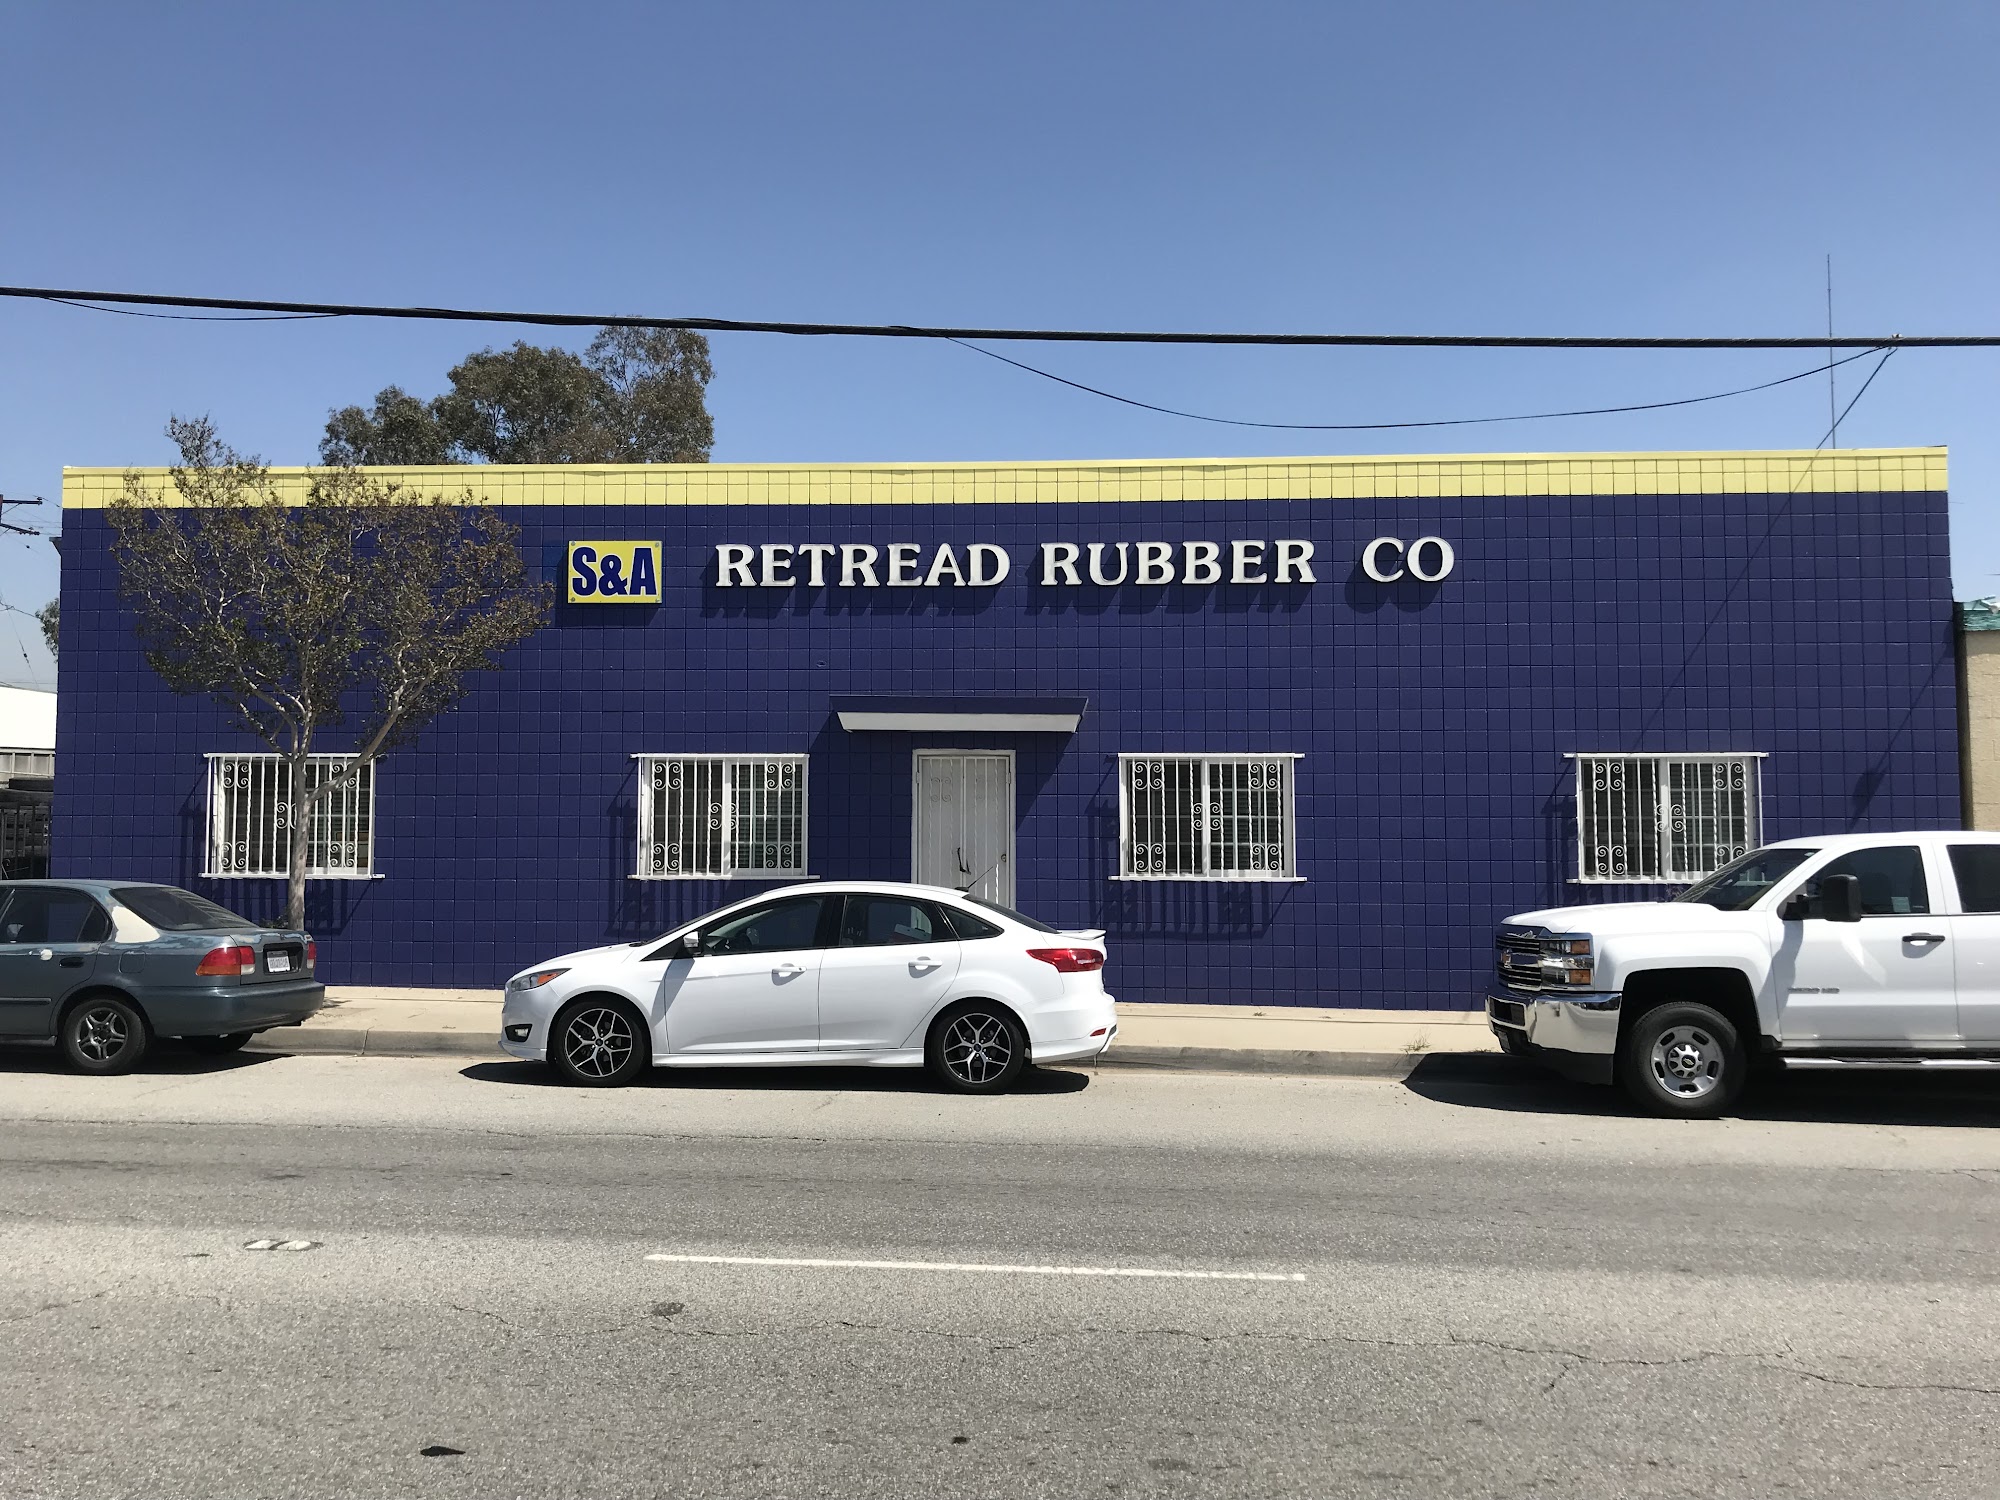 S & A Retread Rubber Co